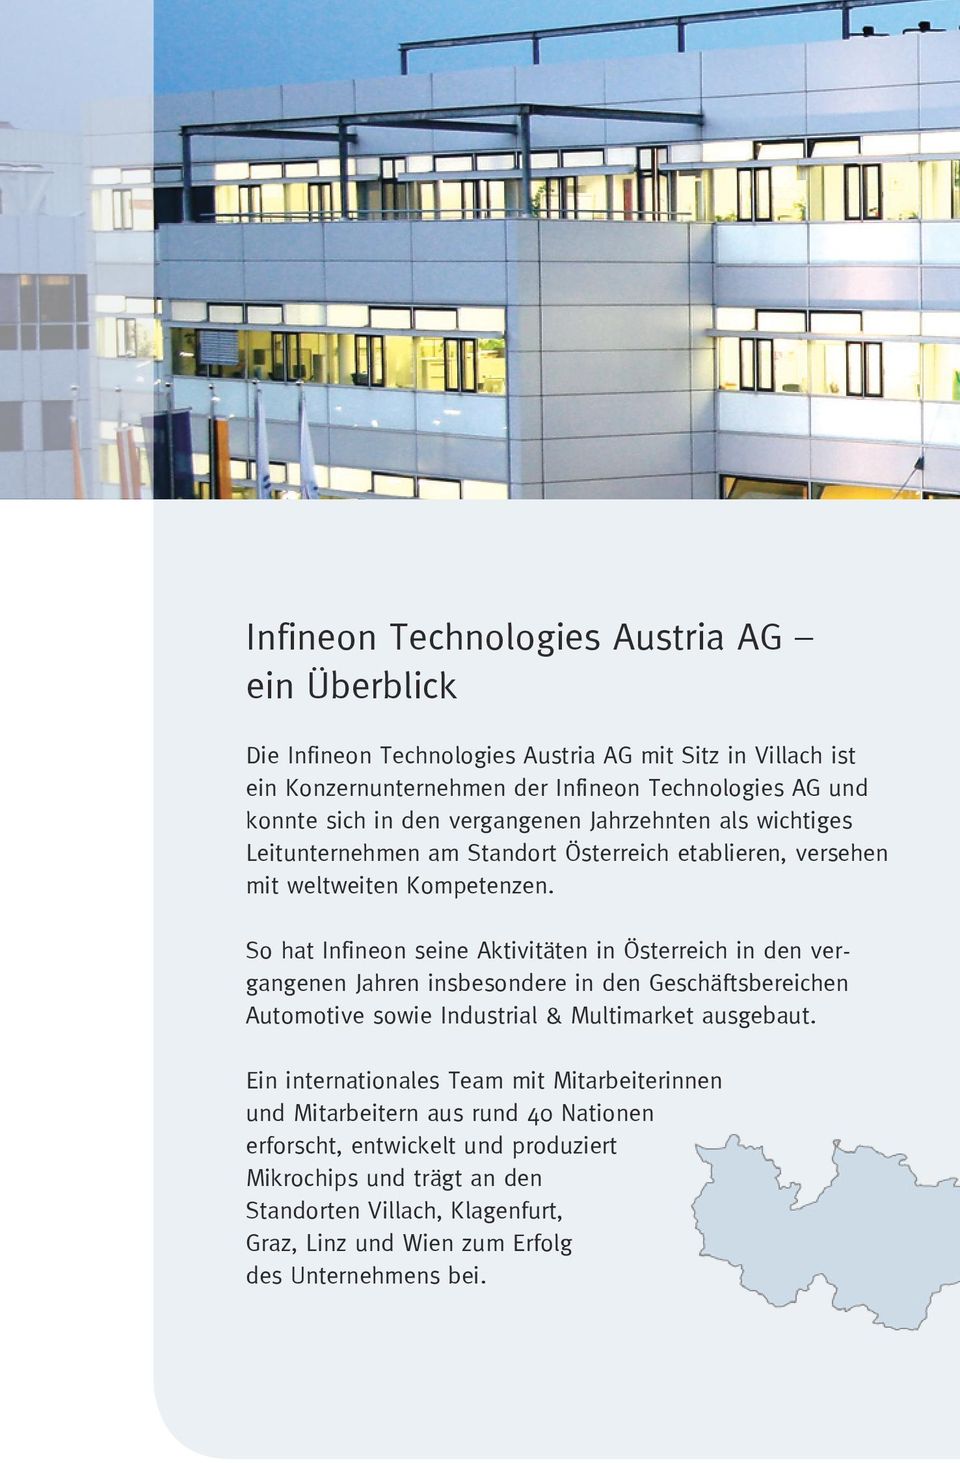 So hat Infineon seine Aktivitäten in Österreich in den vergangenen Jahren insbesondere in den Geschäftsbereichen Automotive sowie Industrial & Multimarket ausgebaut.